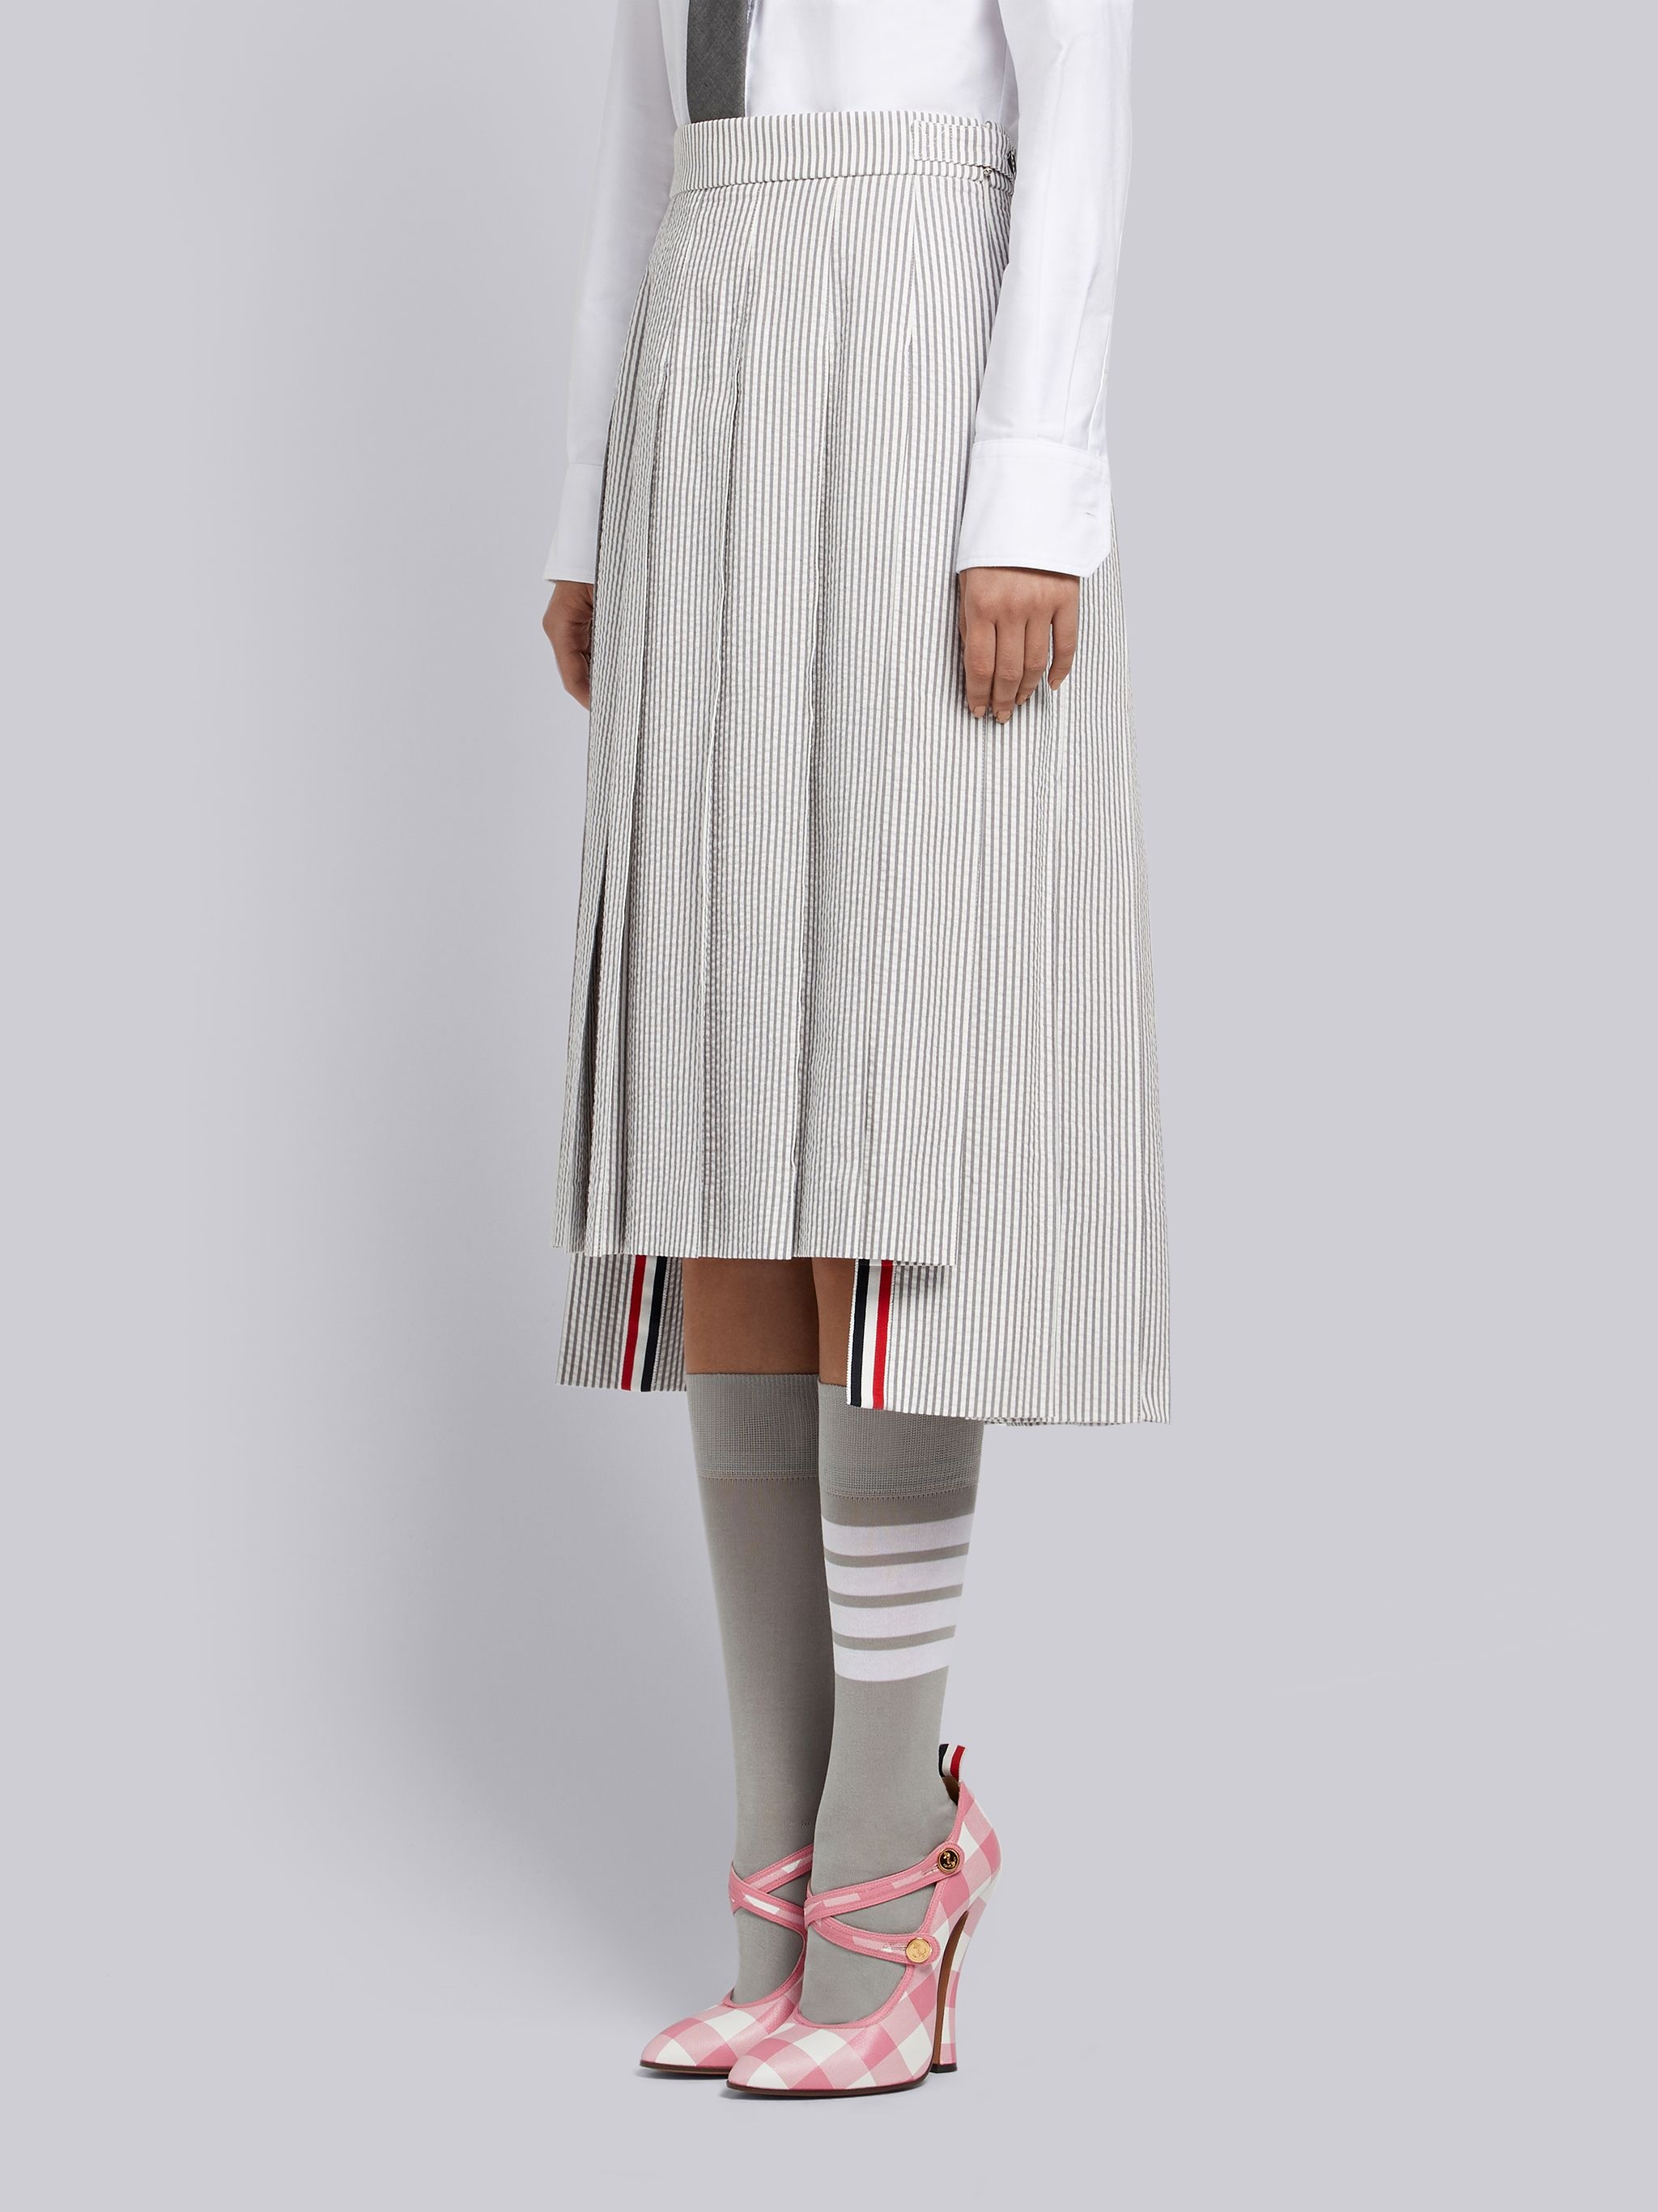 Medium Grey Seersucker Below-the-knee Pleated Skirt - 2